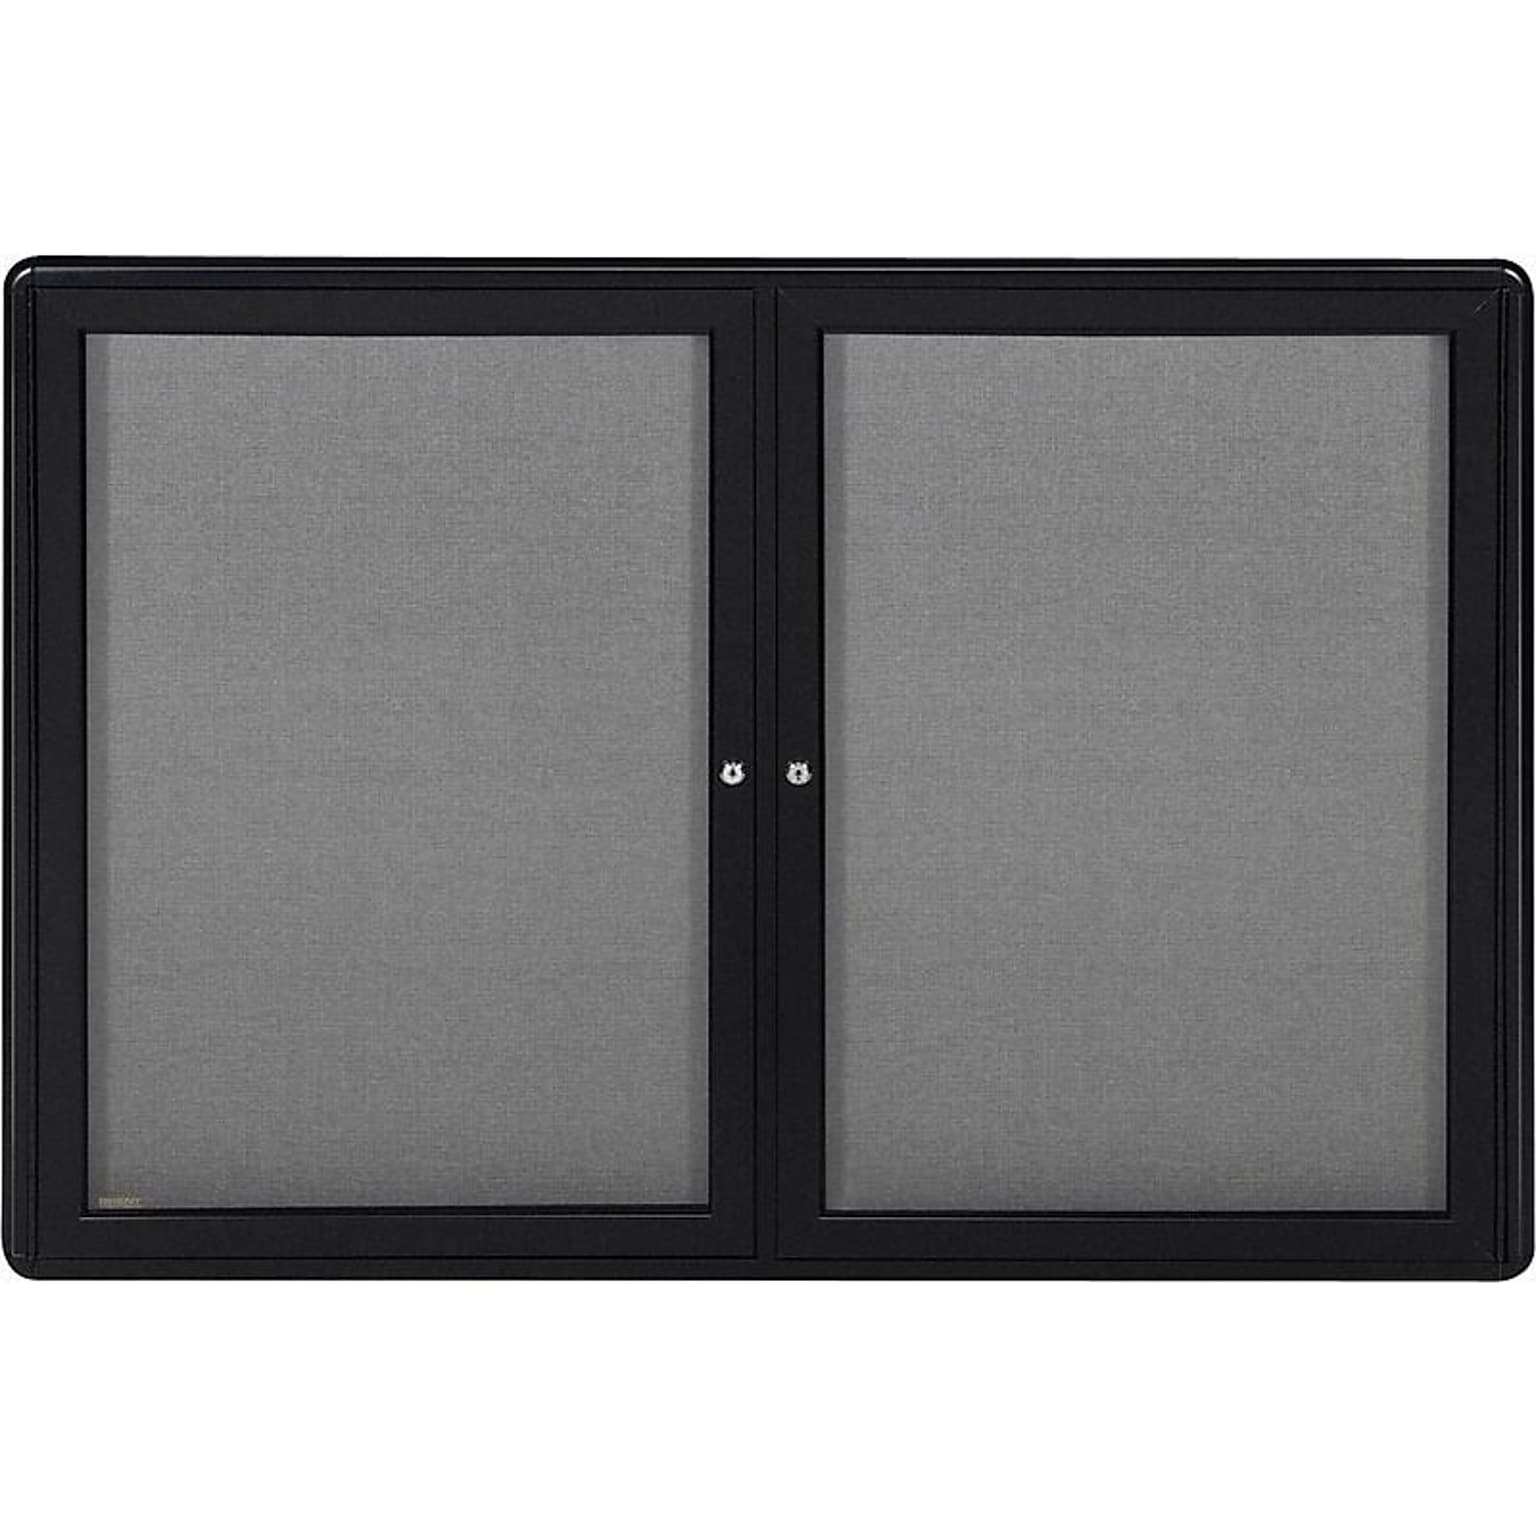 Ghent Ovation Fabric Enclosed Bulletin Board, Black Frame, 3H x 4W (OVK2-F91)